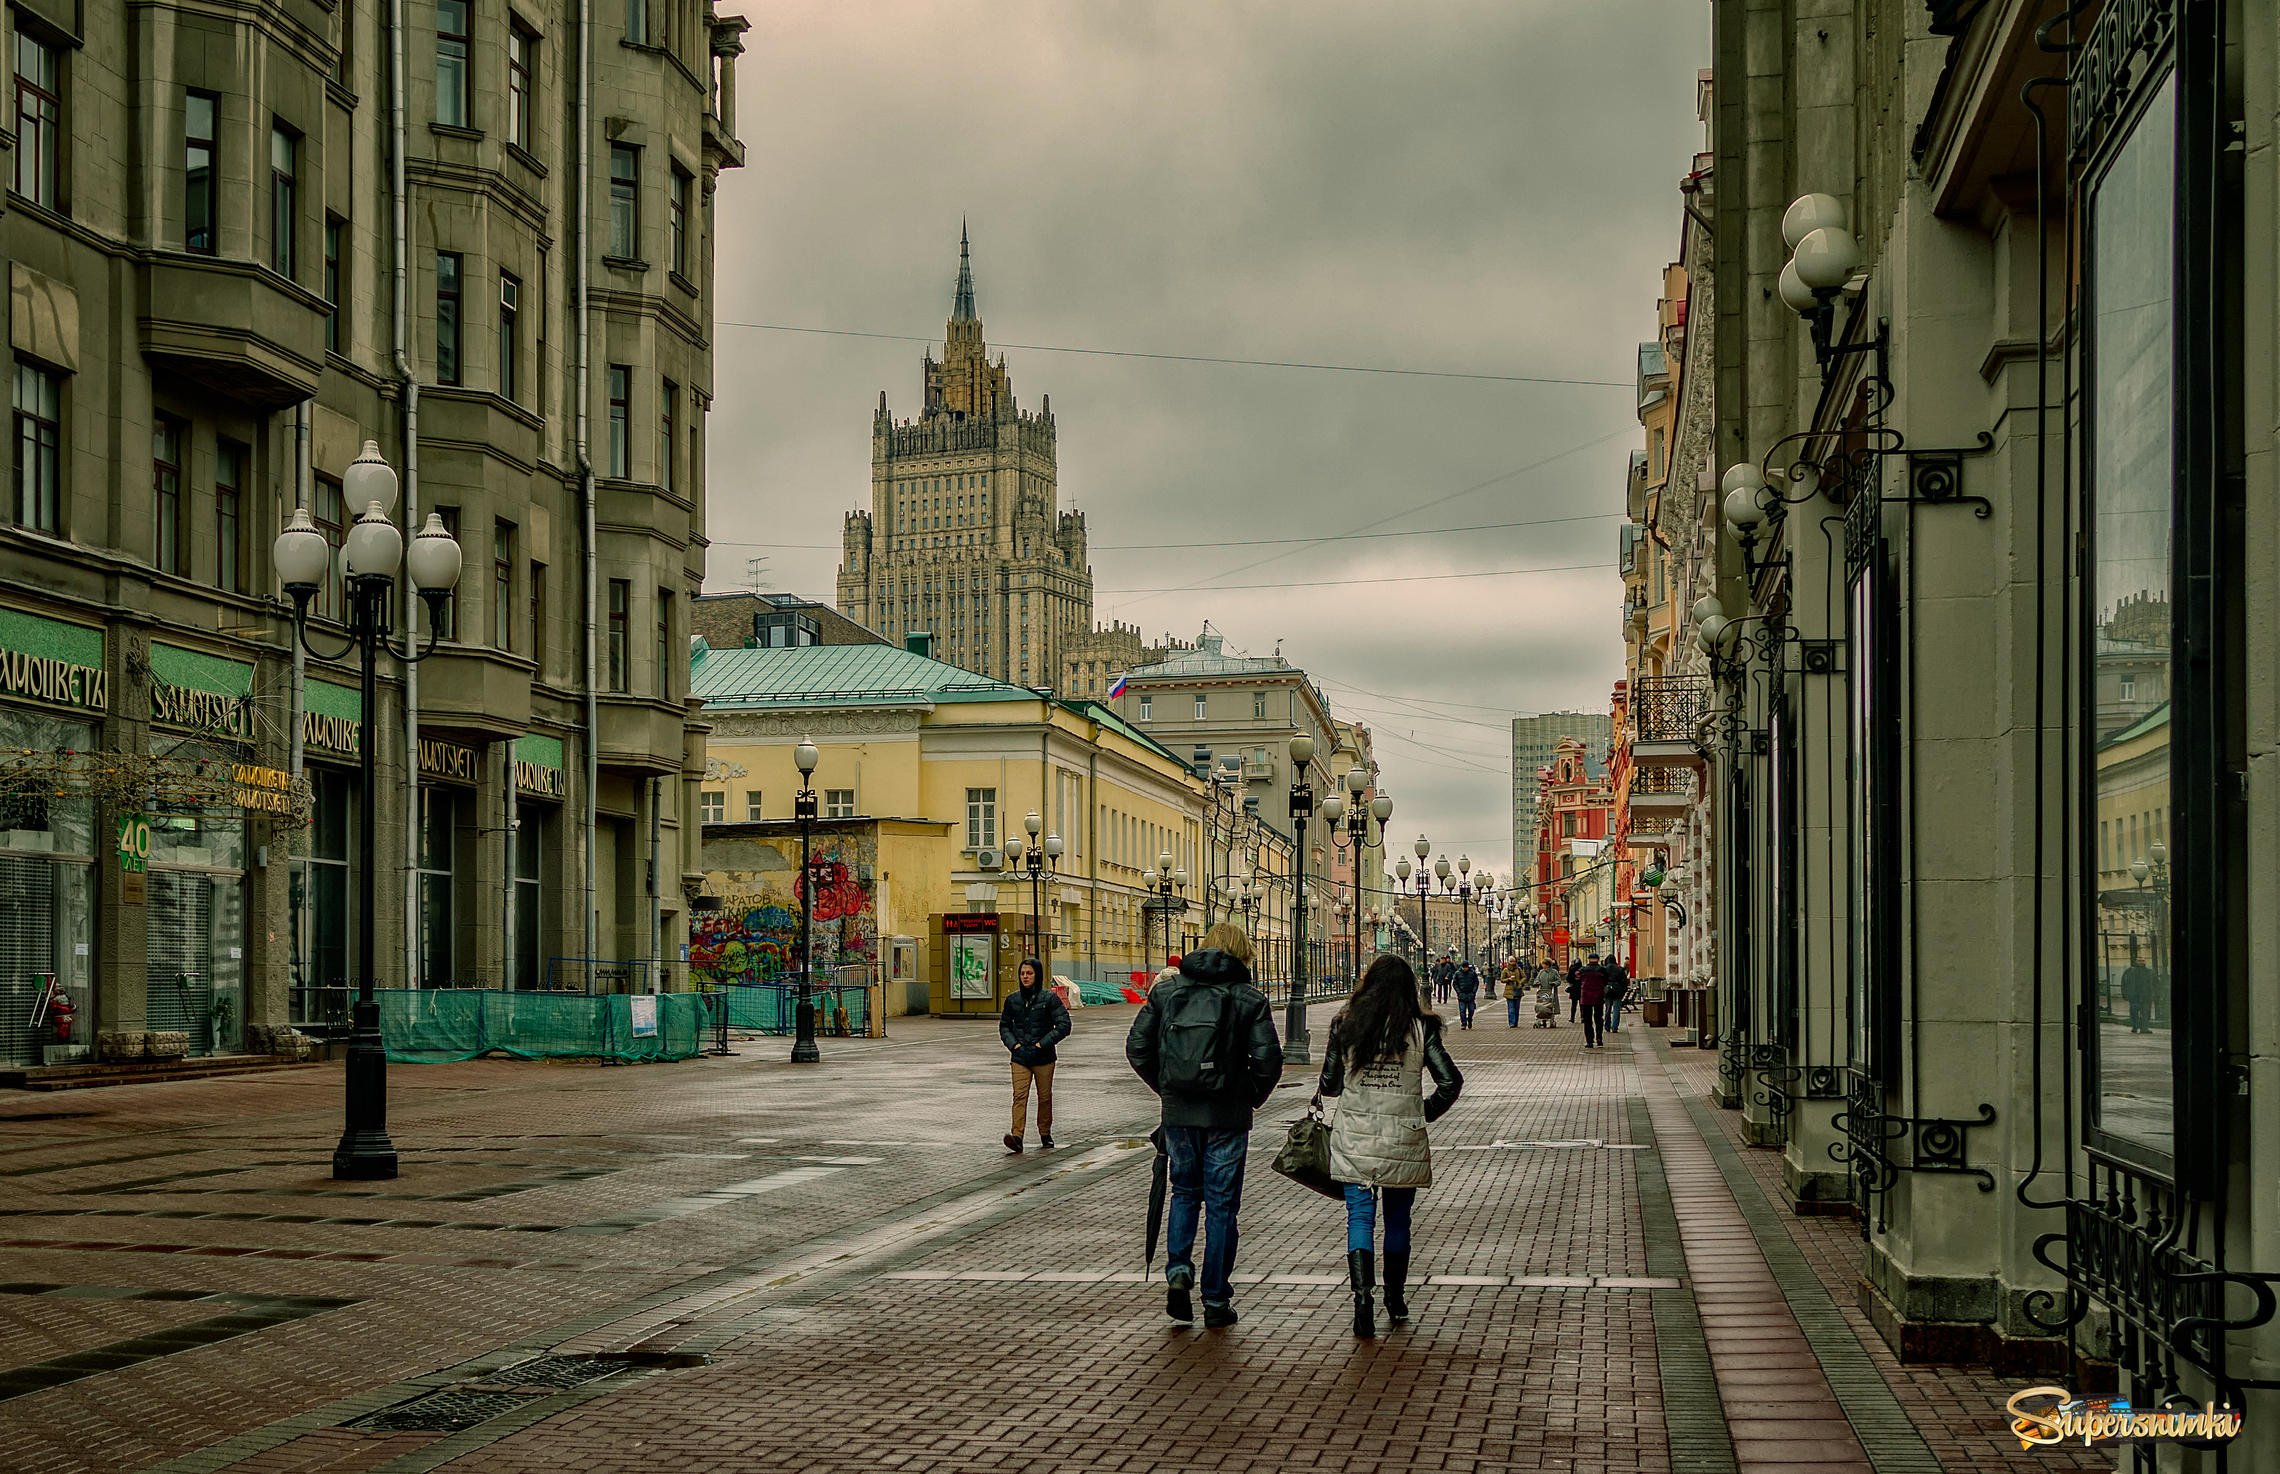 Охотный переулок. Улица Арбат в Москве. Старый Арбат и новый Арбат. Старый Арбат пешеходная улица. Арбатская улица Москва.